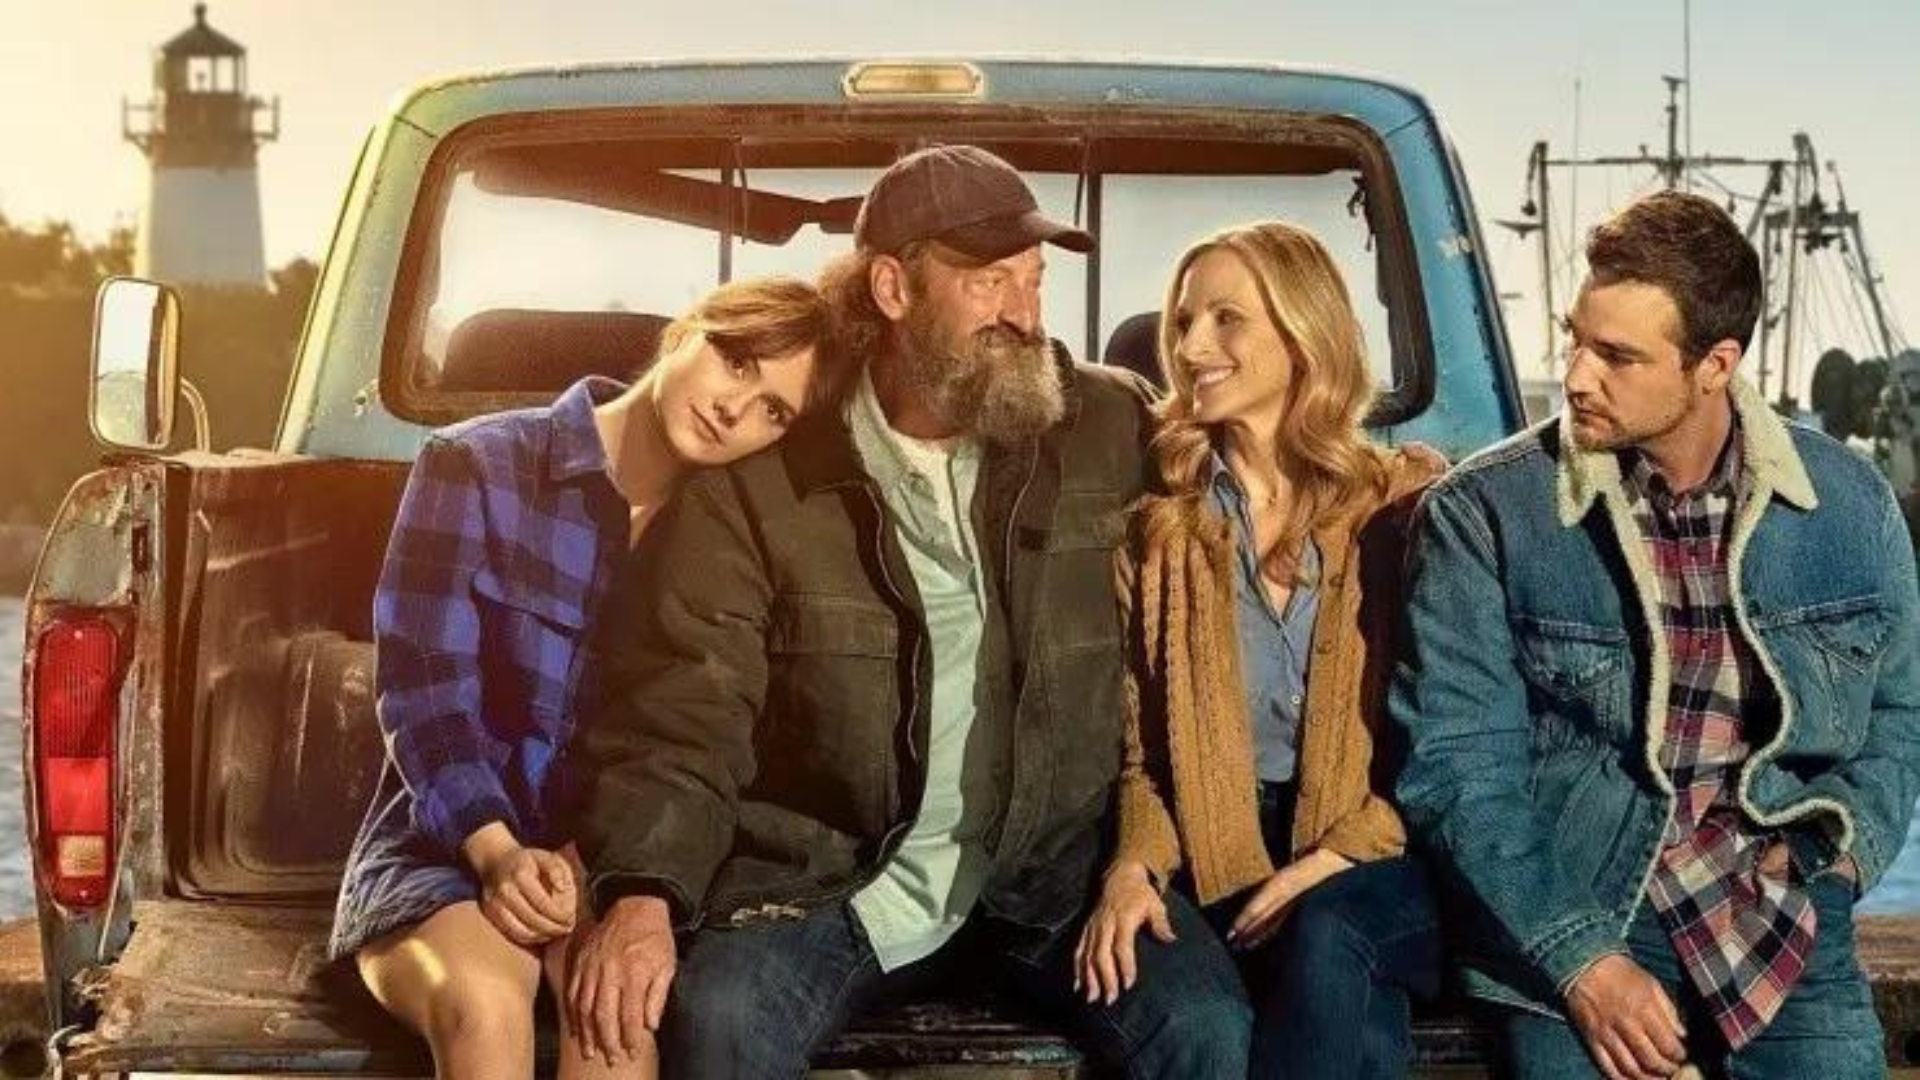 Escena de la película ‘Señales del corazón’ CODA con los protagonistas sentados en el platón de una camioneta mirándose entre sí